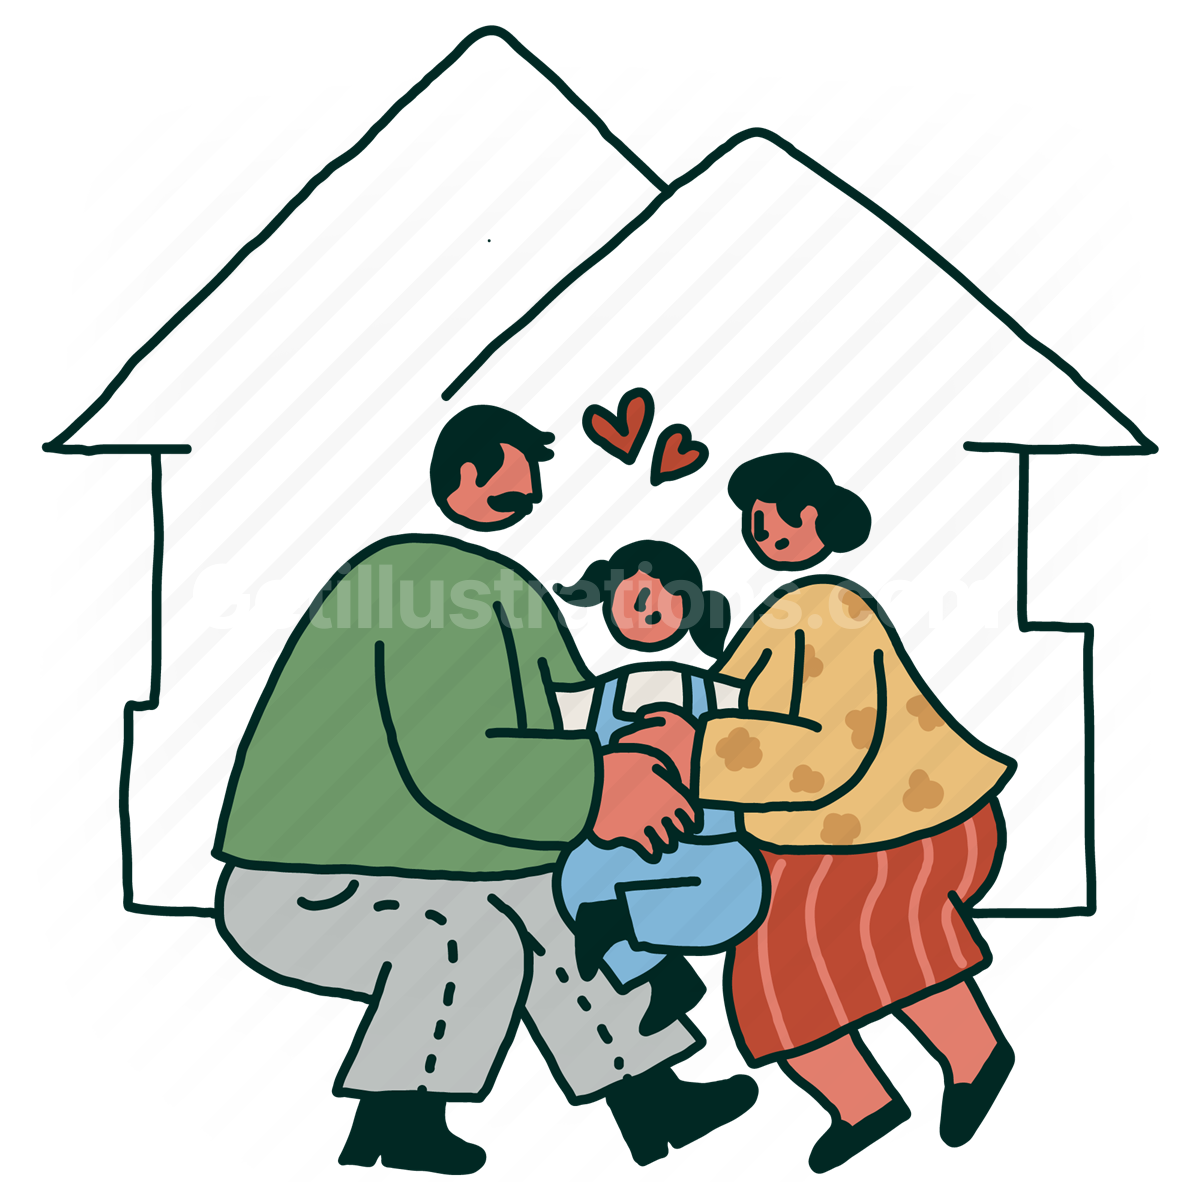 Family and Children illustration